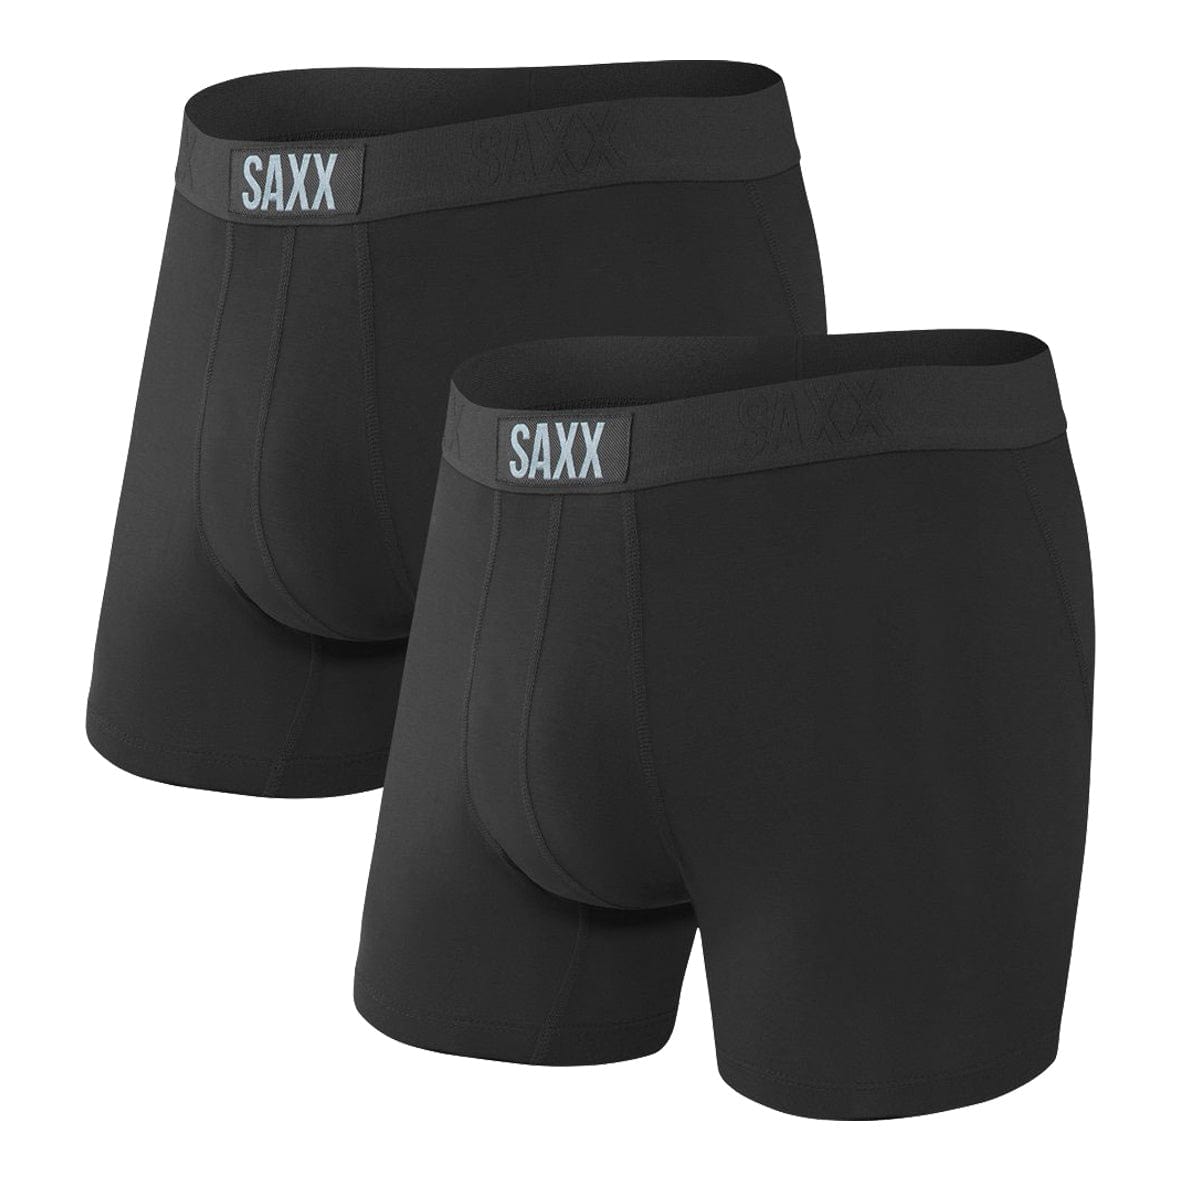 Saxx Vibe Boxers - Black / Black (2 Pack)